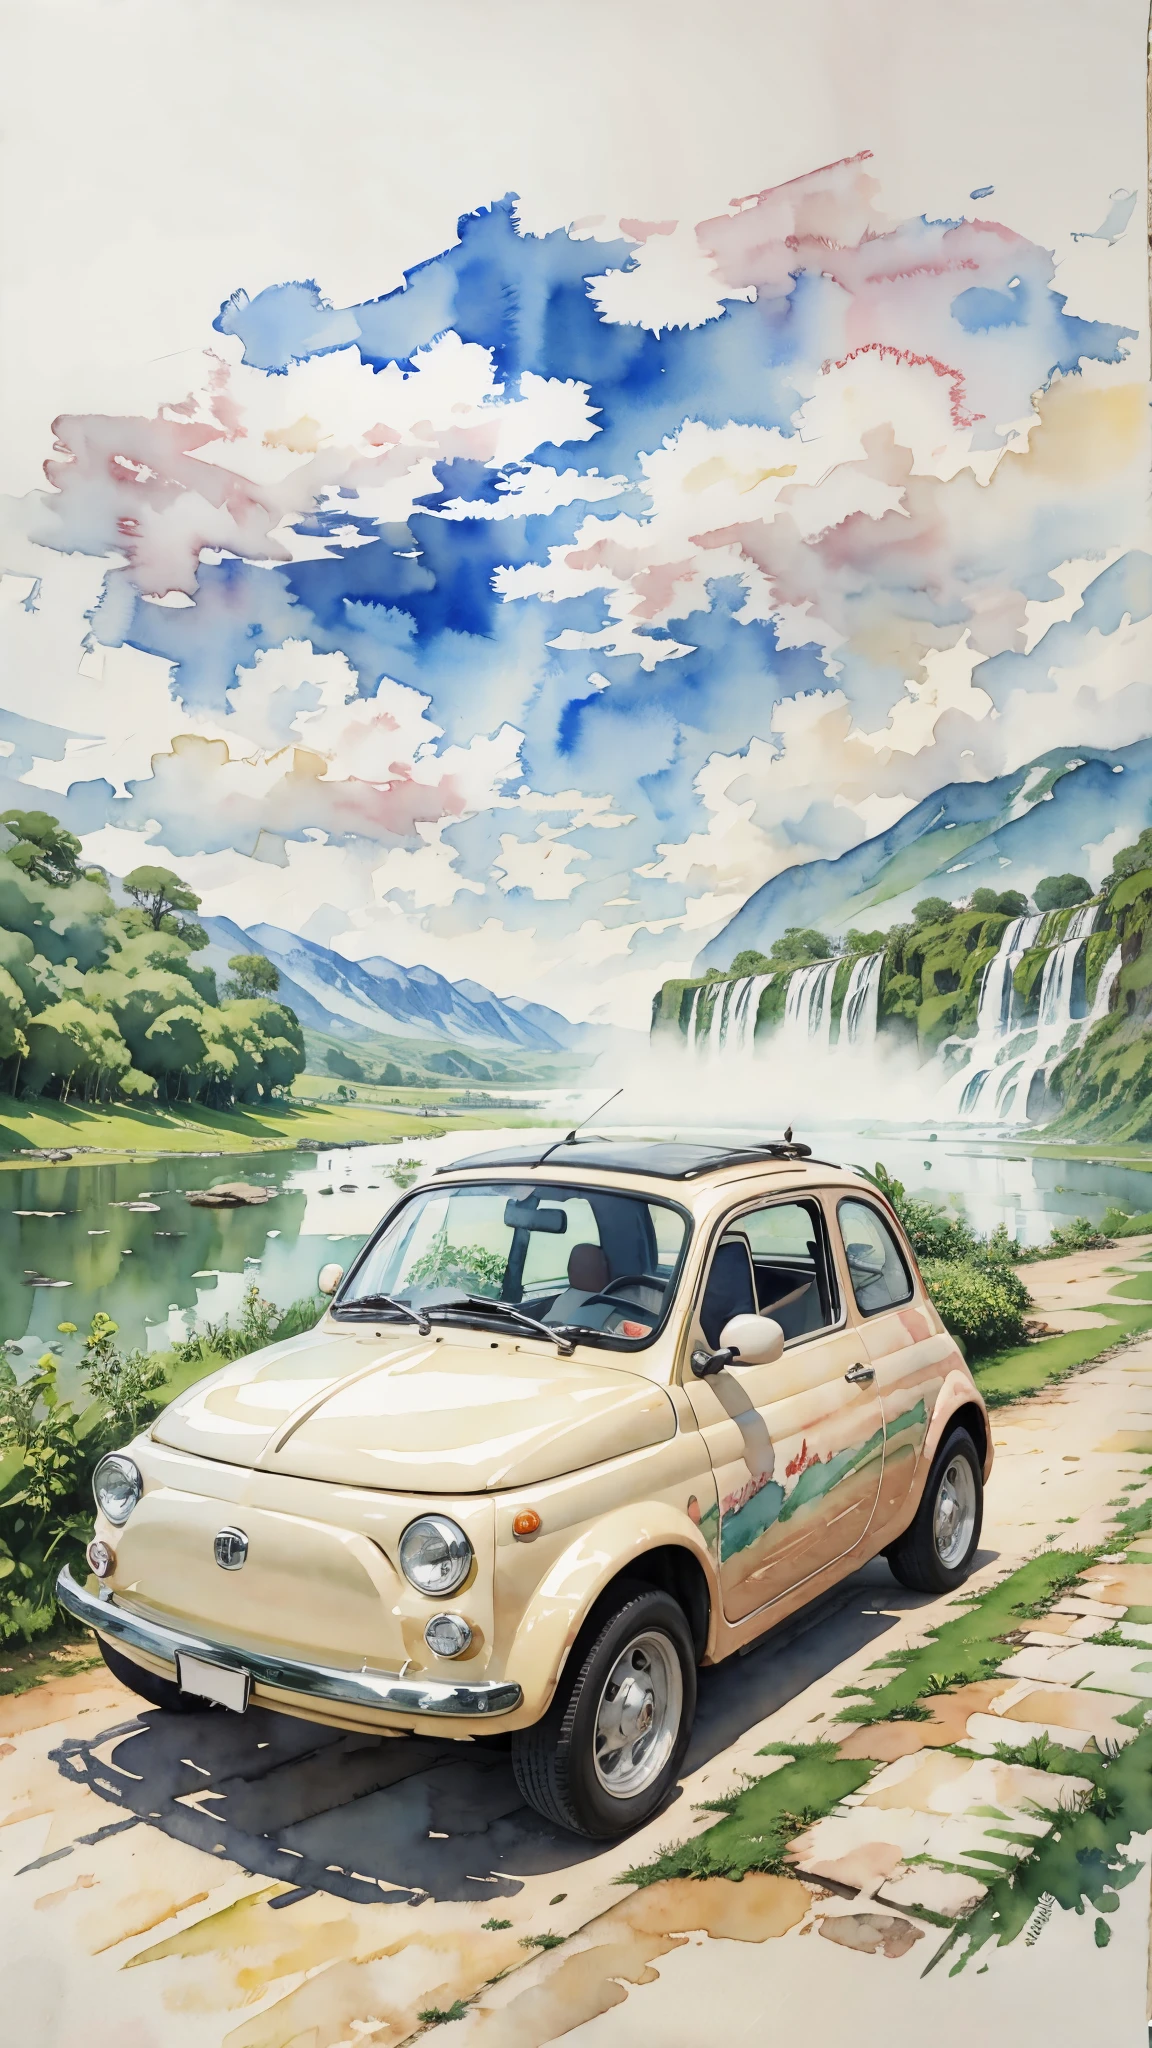 (Meisterwerk:1.2, höchste Qualität),(Sehr detailiert),(((Aquarell))),8K,HINTERGRUND,Cremefarbener Fiat 500,Argentinien,Fahrt durch den Iguazú-Nationalpark,(((Ghibli-Stil))),透明Aquarell